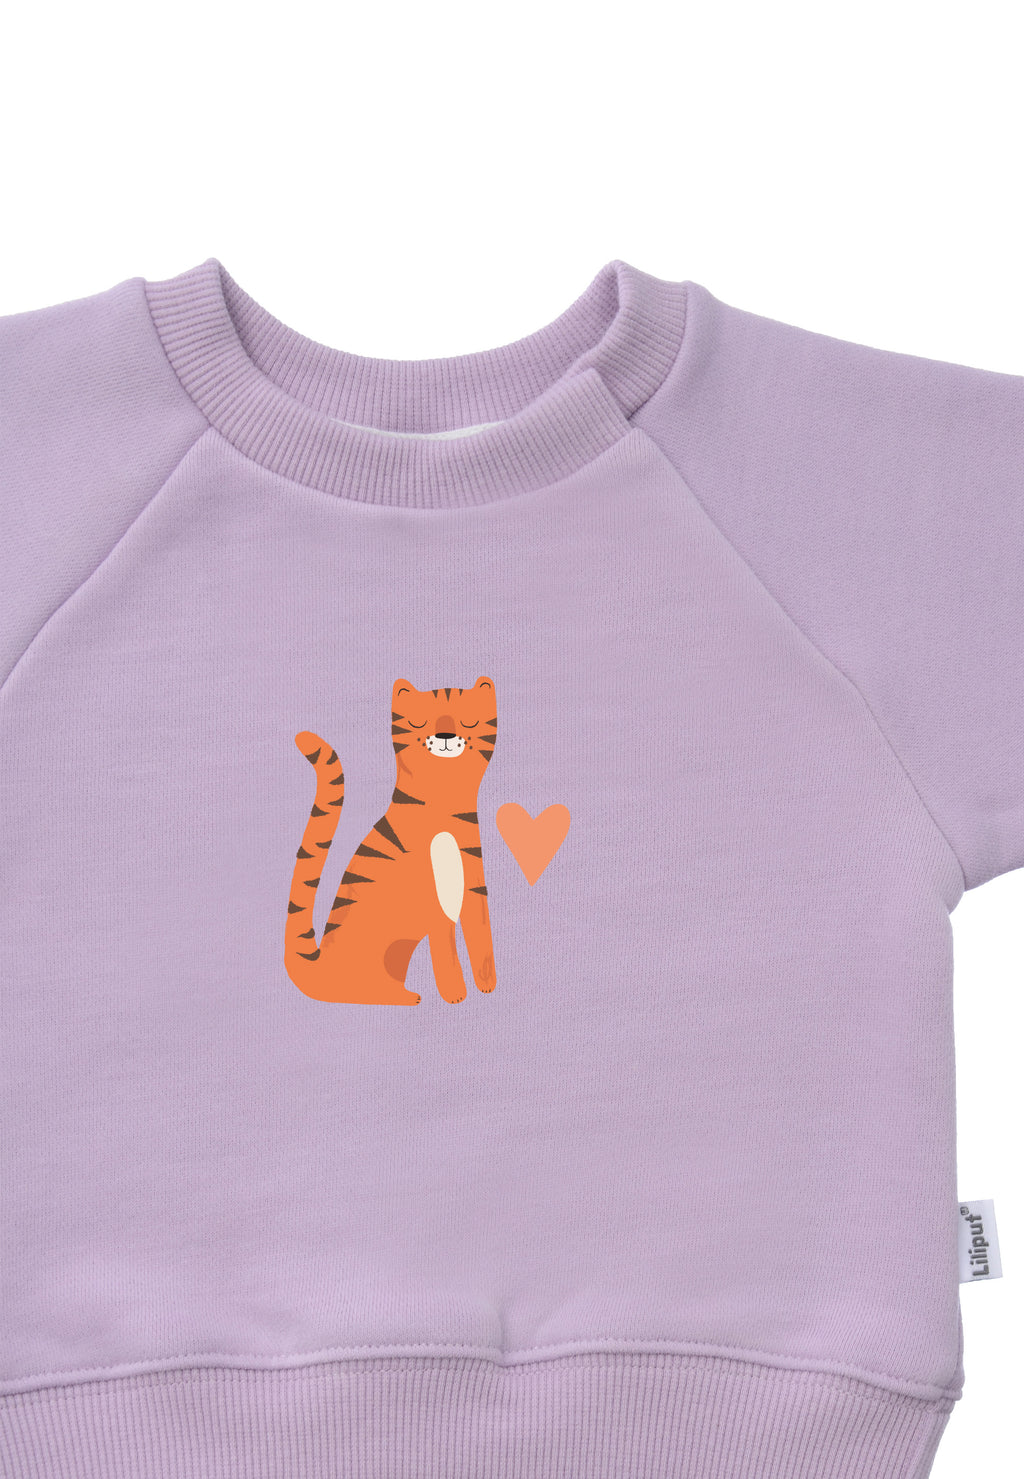 Sweatshirt in flieder mit Raglanärmeln und Tiger Print.